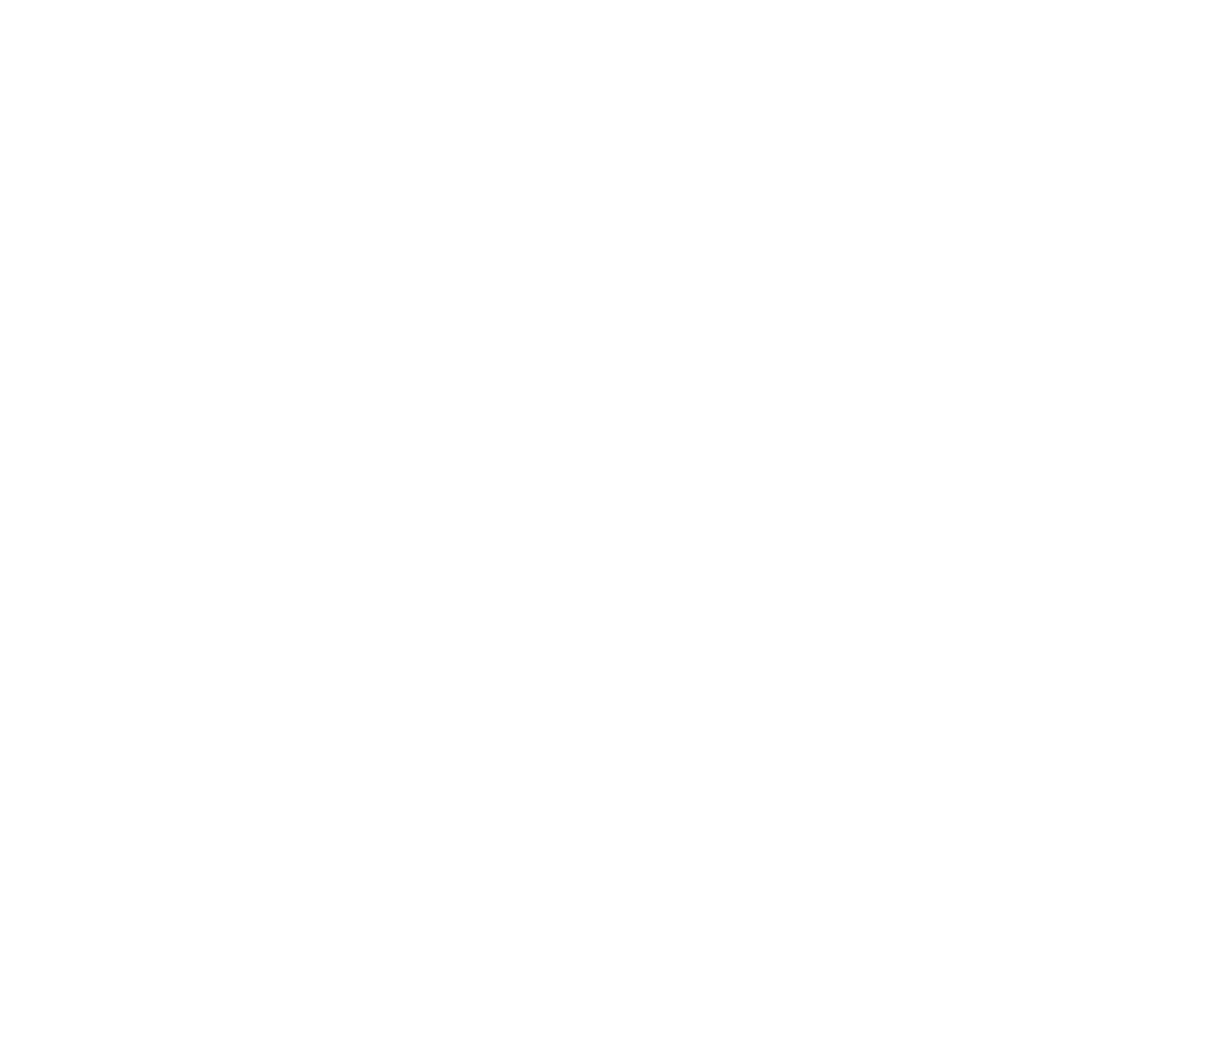 Alliance for Water Stewardship logo.